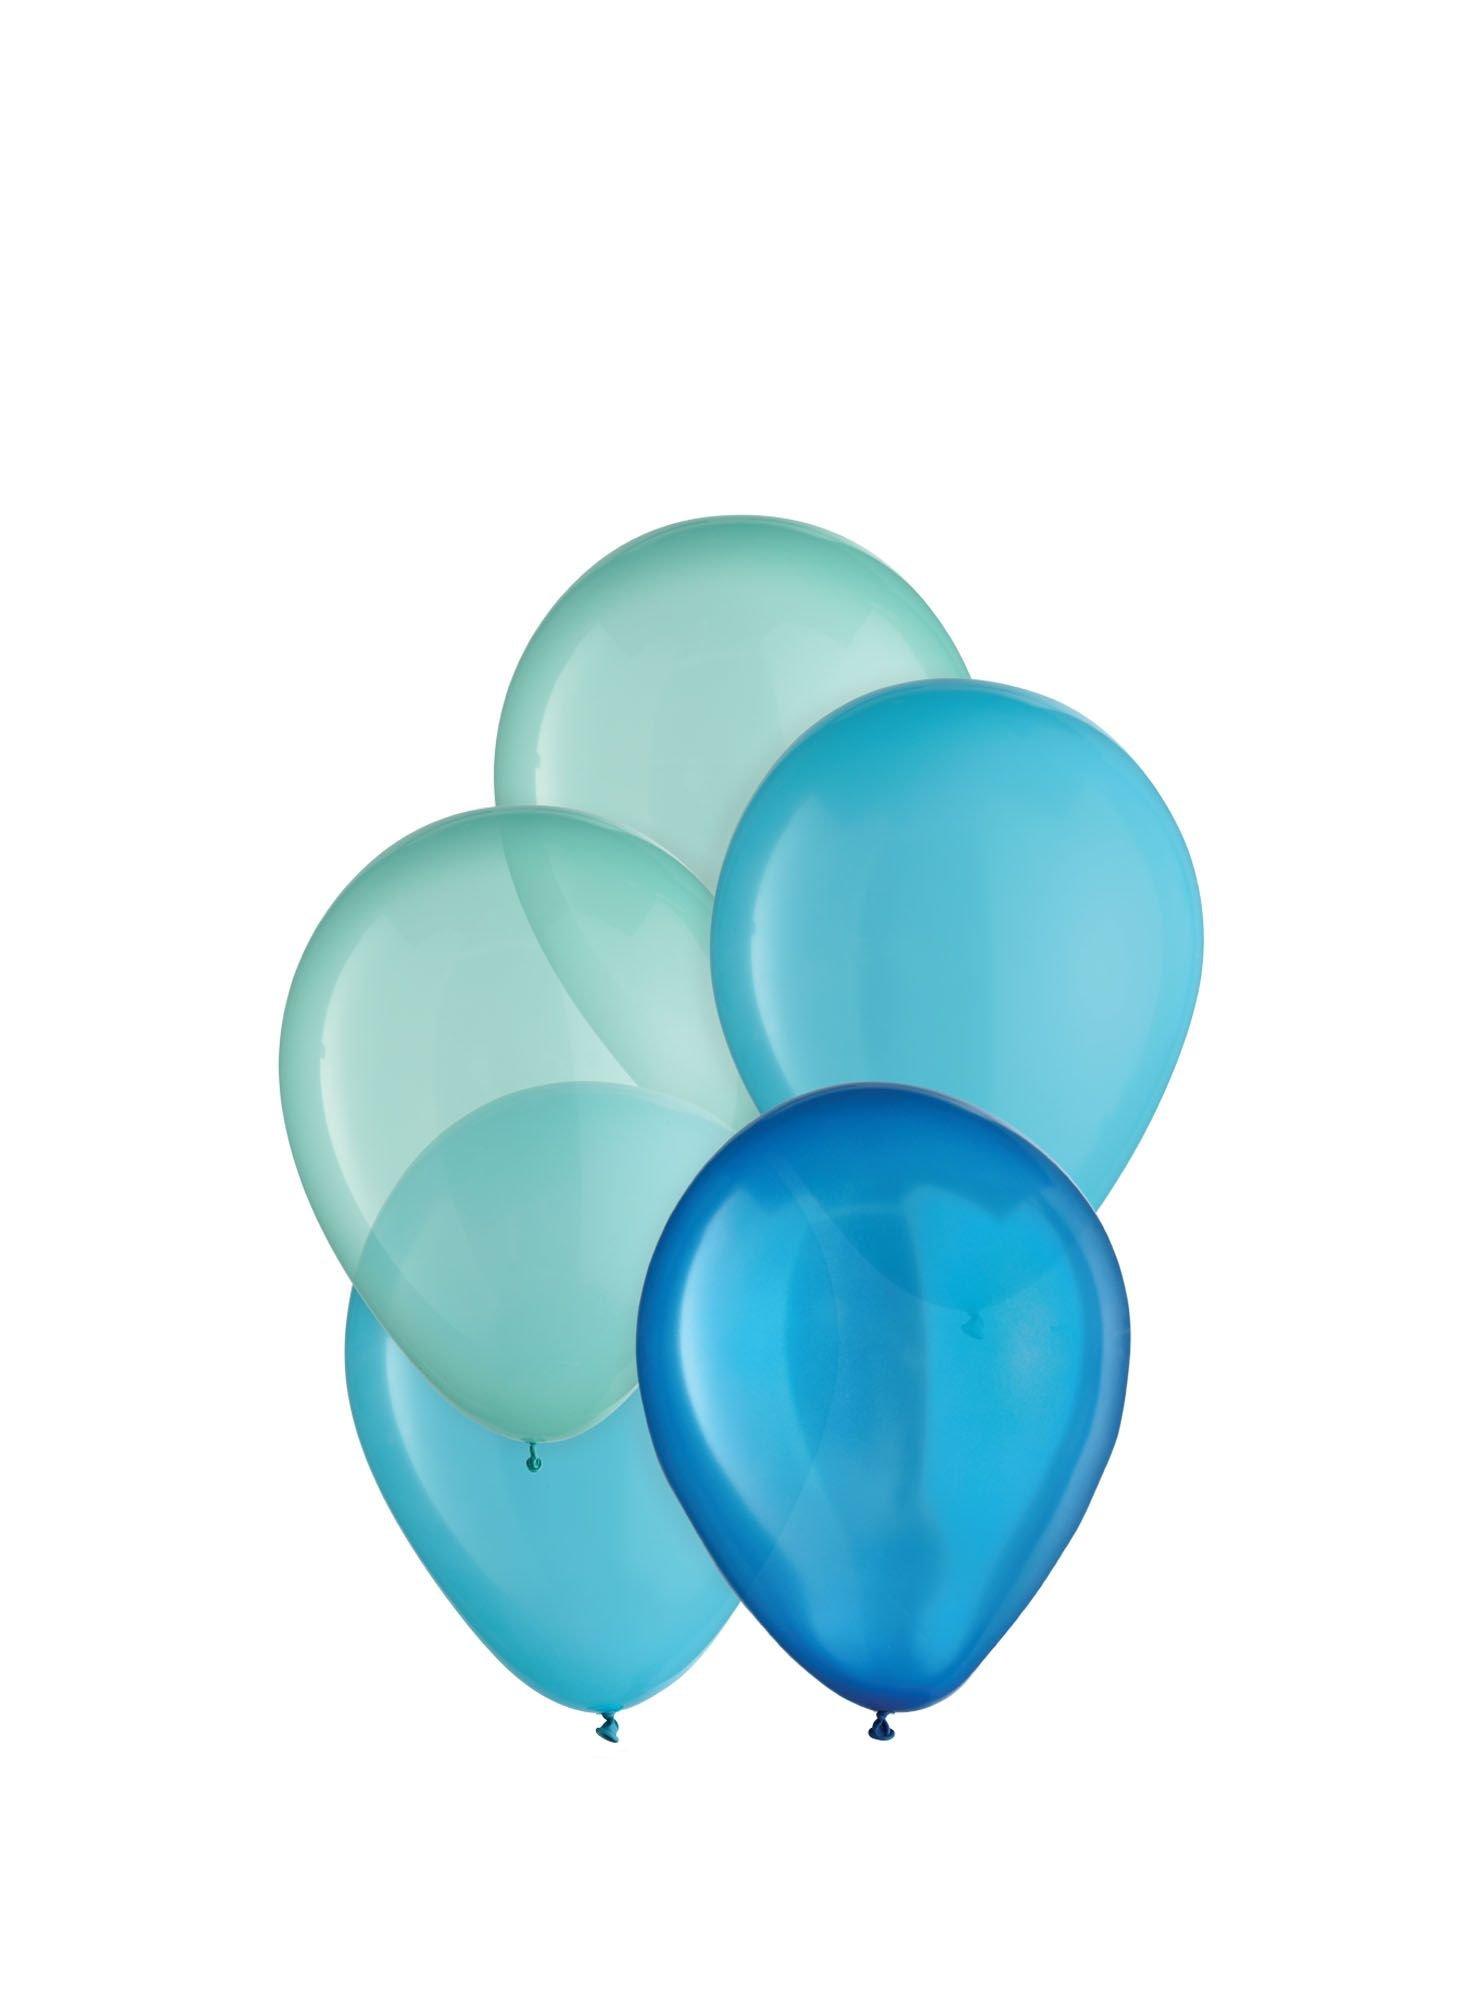 25ct, 5in, Aqua 3-Color Mix Mini Latex Balloons - Shades of Blue